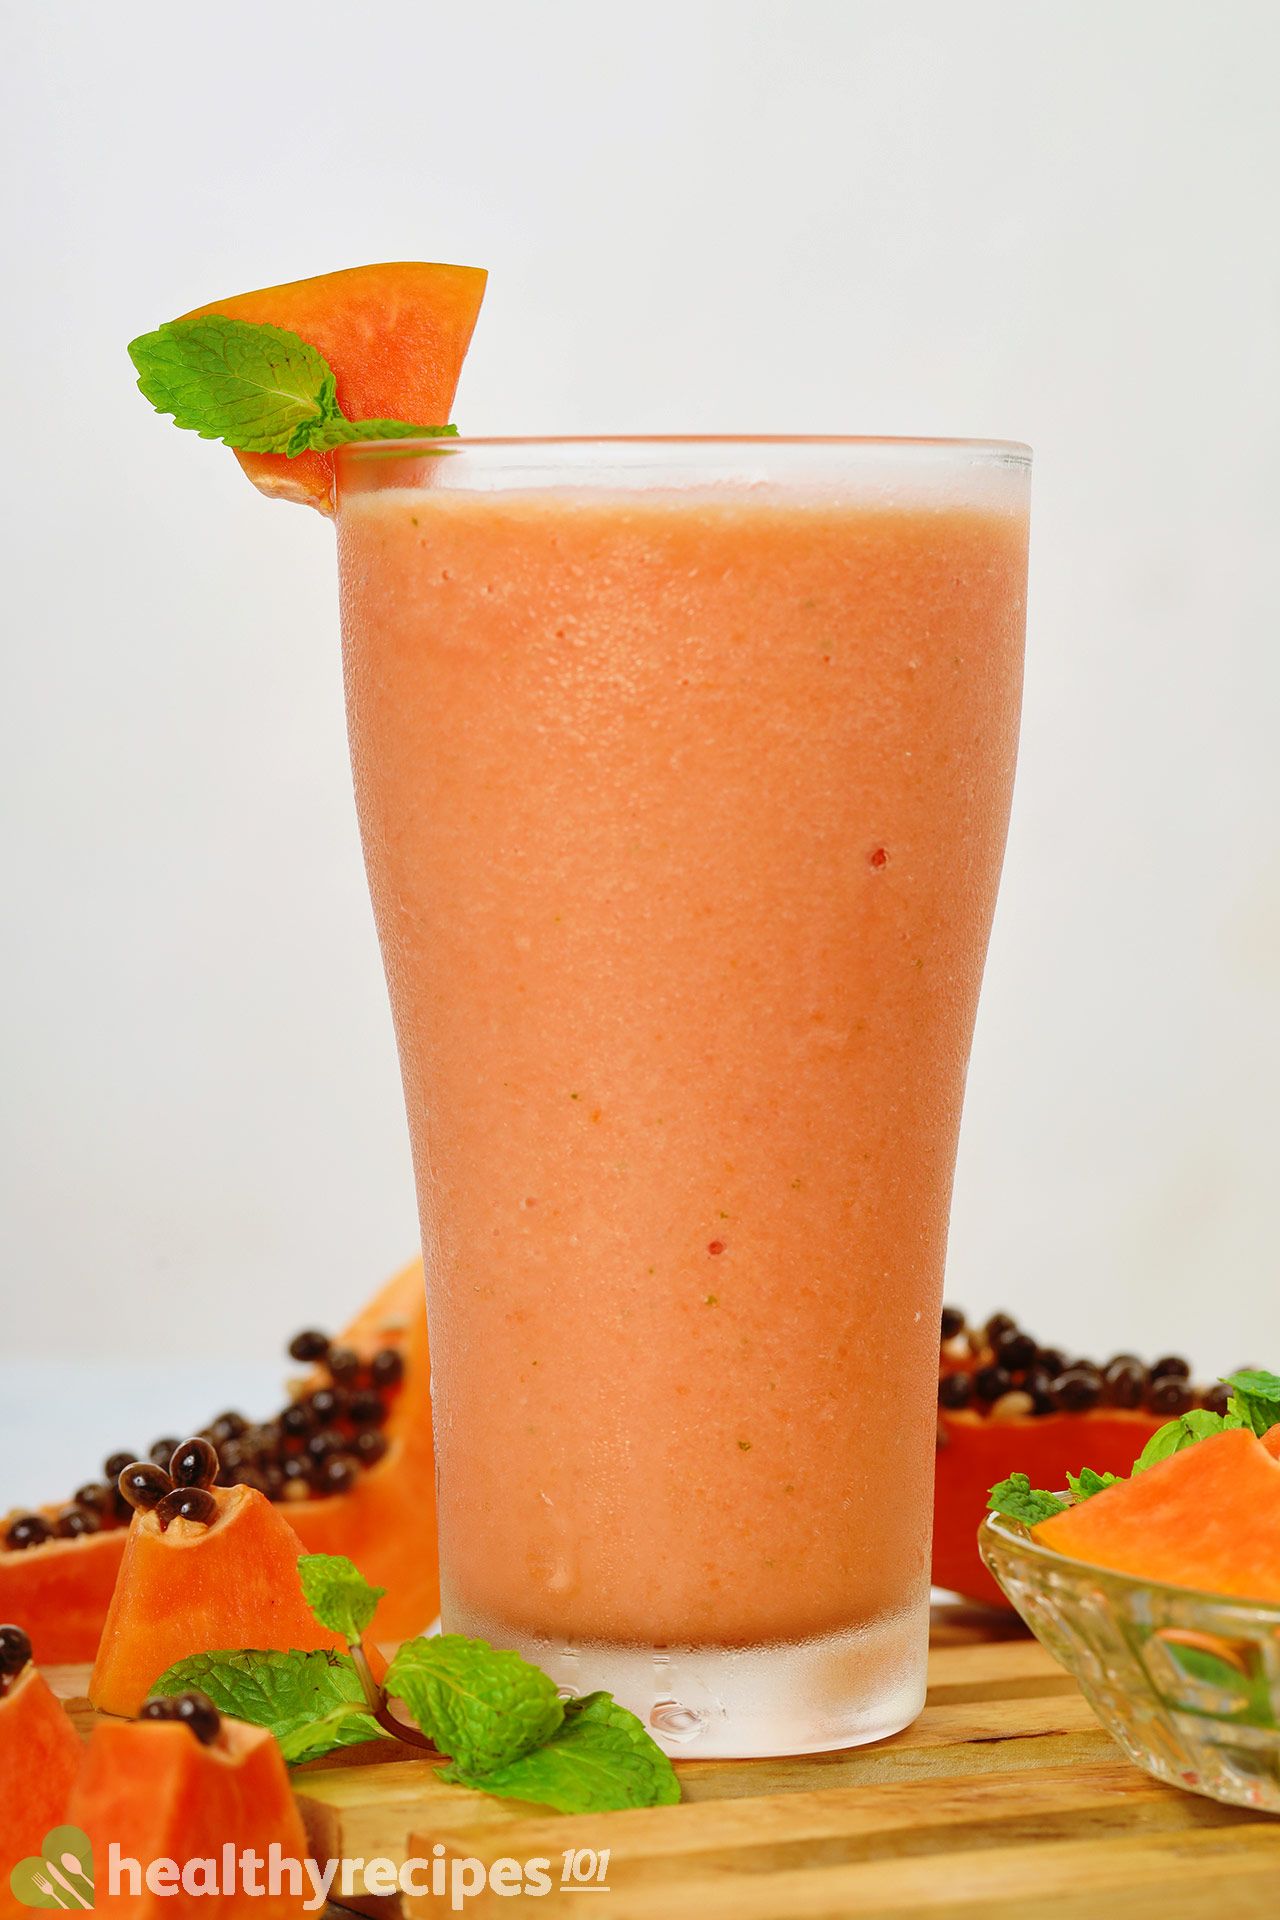 Benefits of Papaya Smoothie